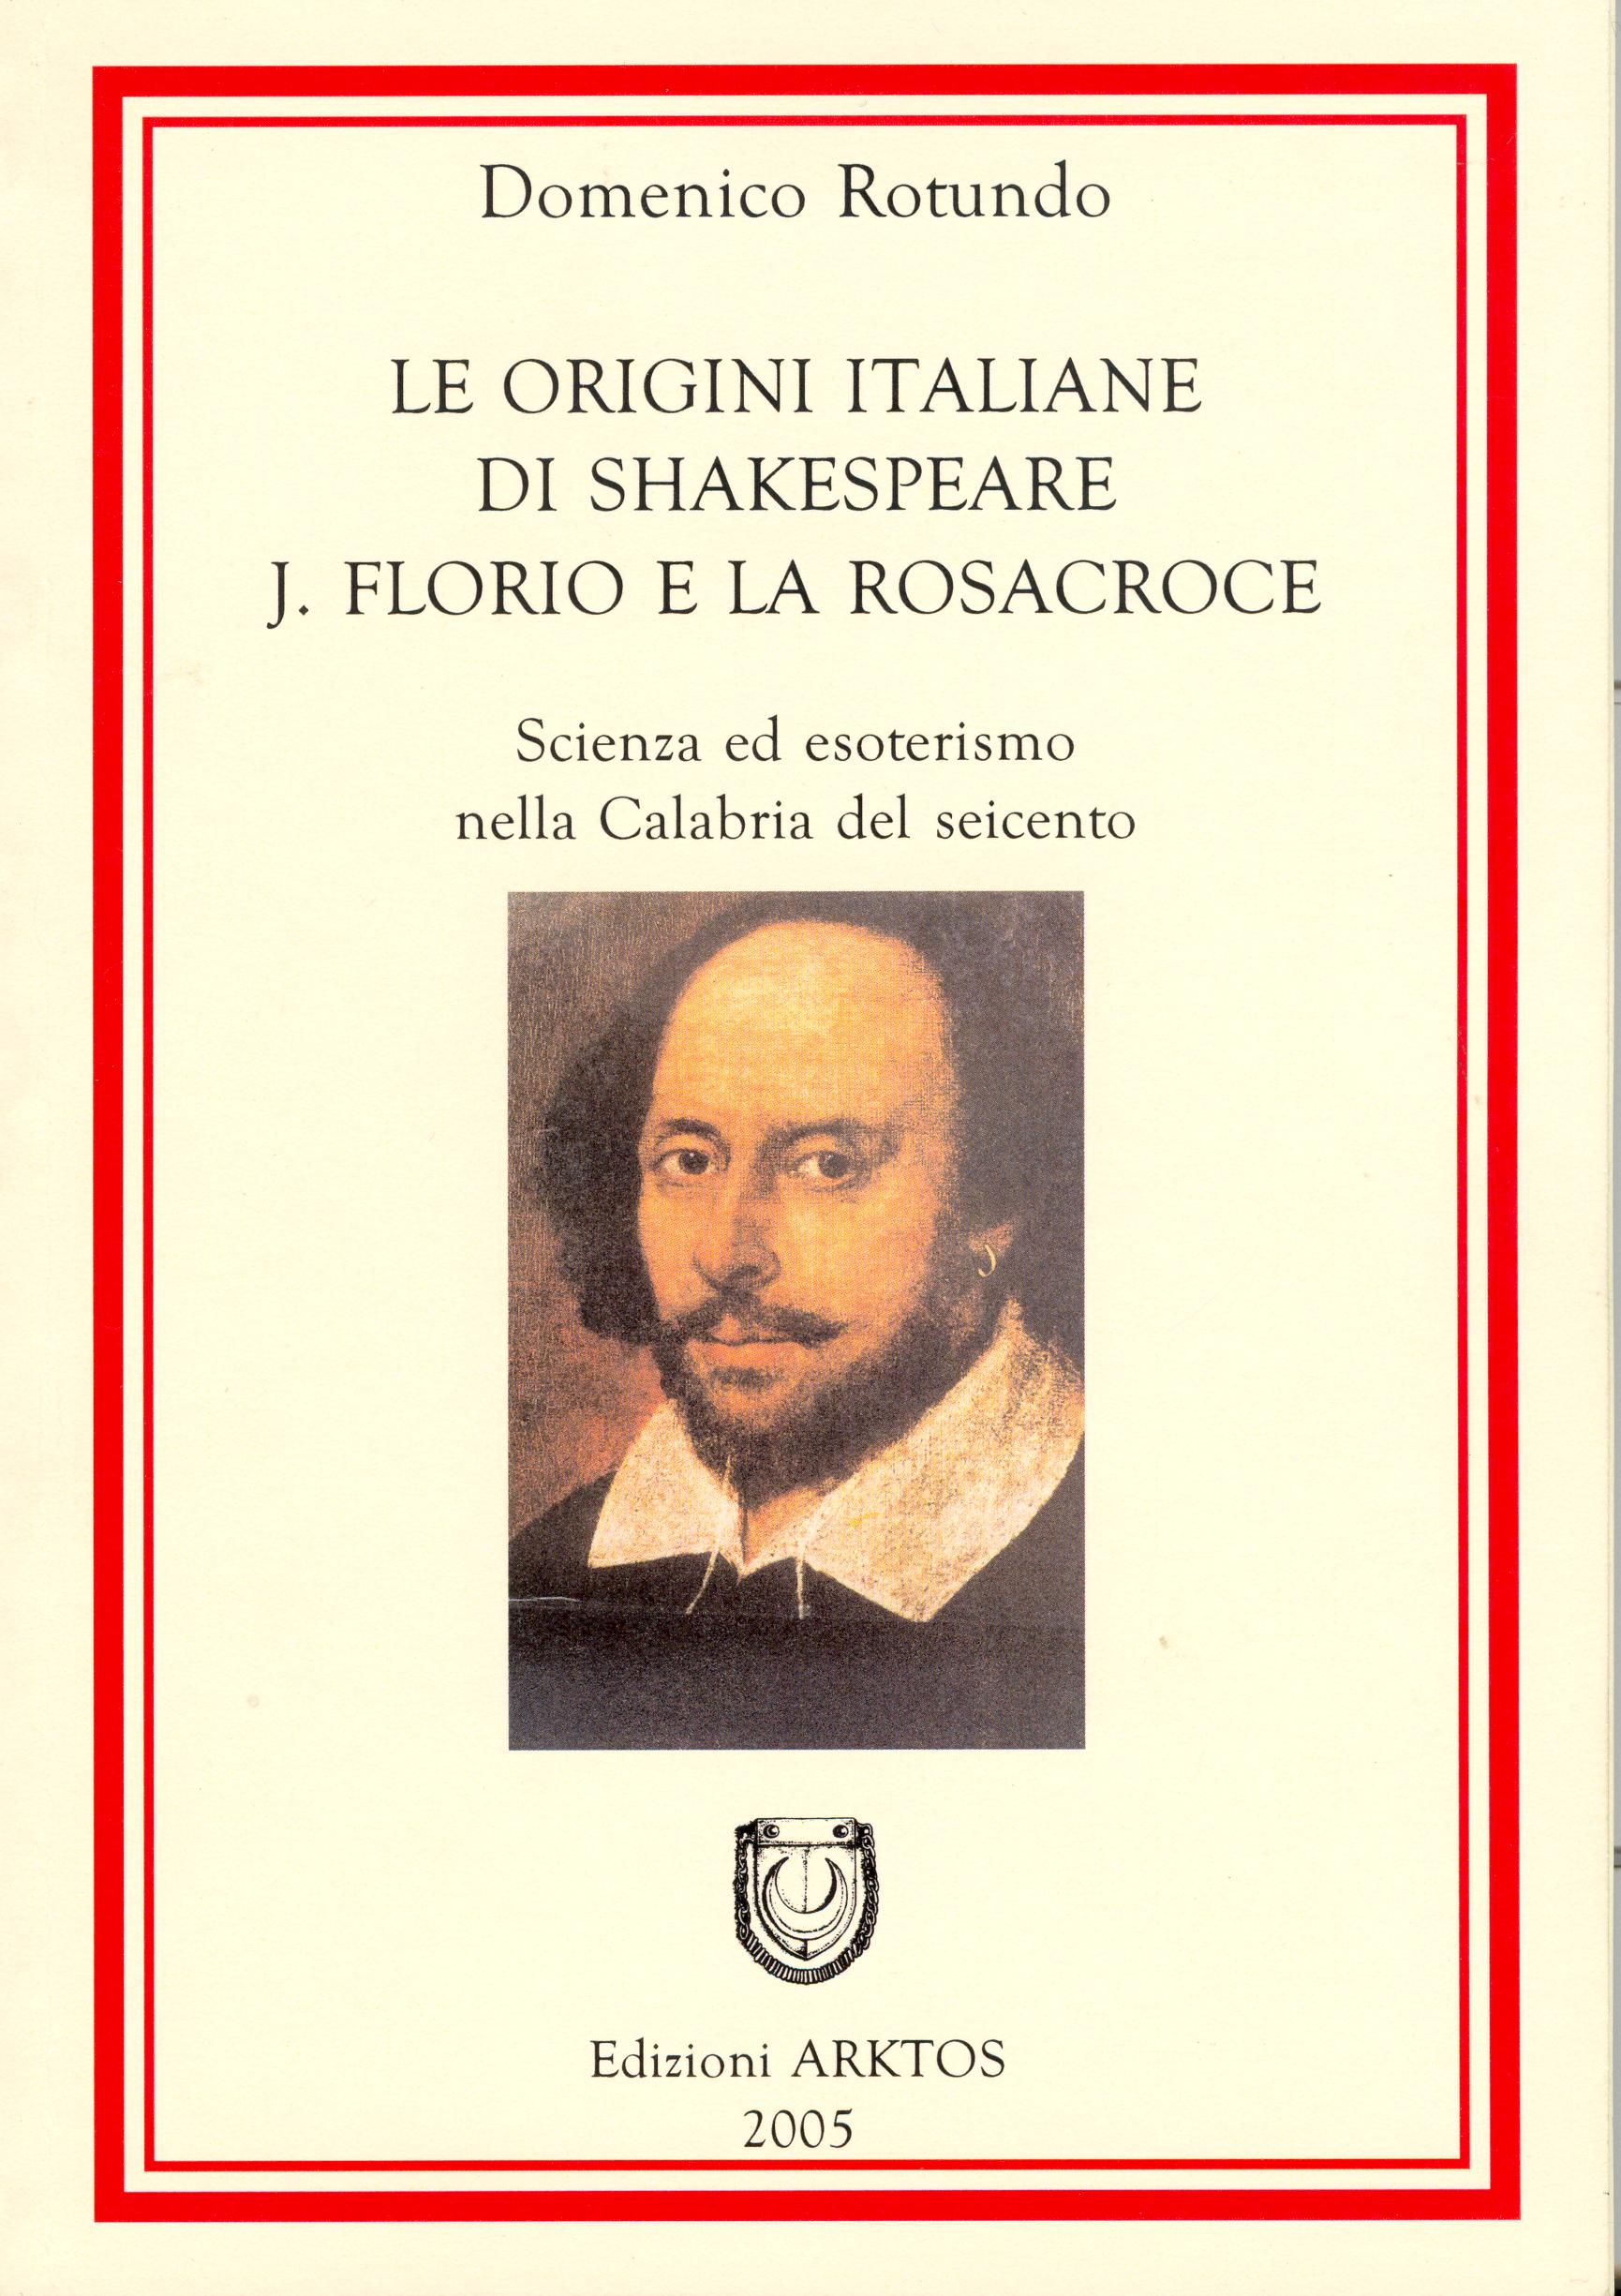 Le origini italiane di Shakespeare | Libreria Esoterica Il Reame d'Inverno